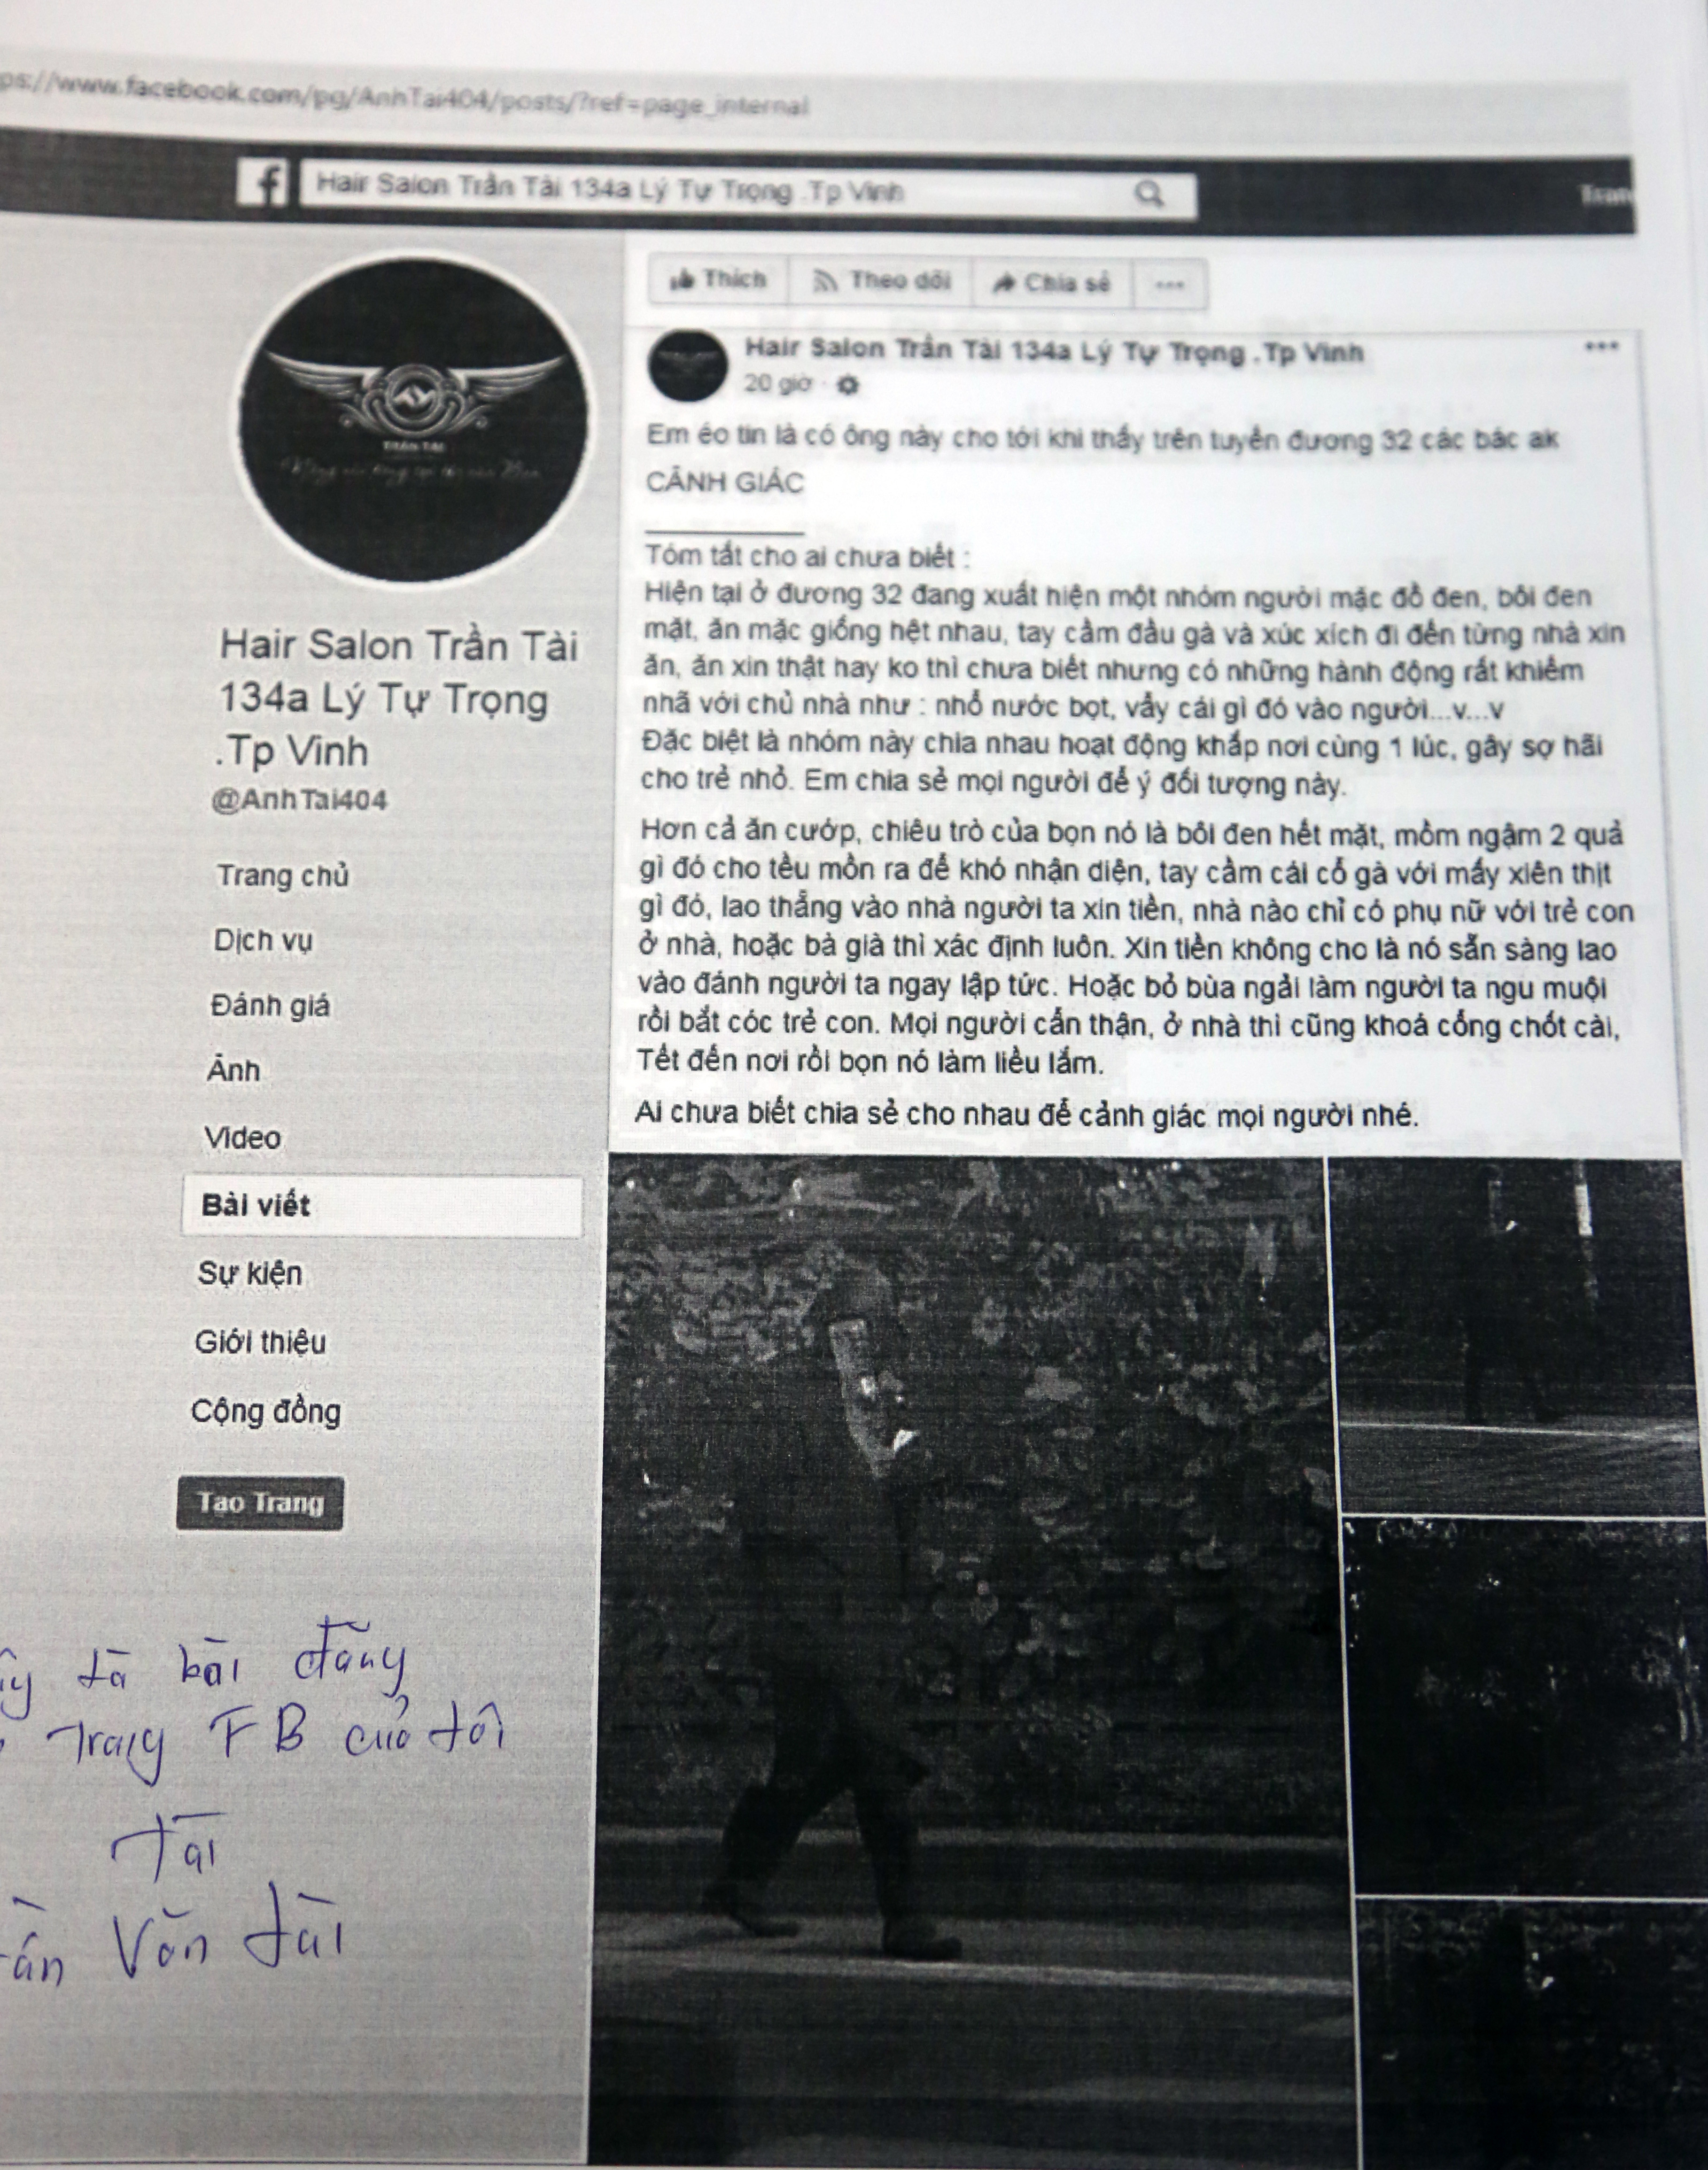 Hình ảnh do Phòng An ninh chính trị nội bộ - Công an tỉnh bằng các biện pháp kỹ thuật lưu lại và in sao từ Facebook 